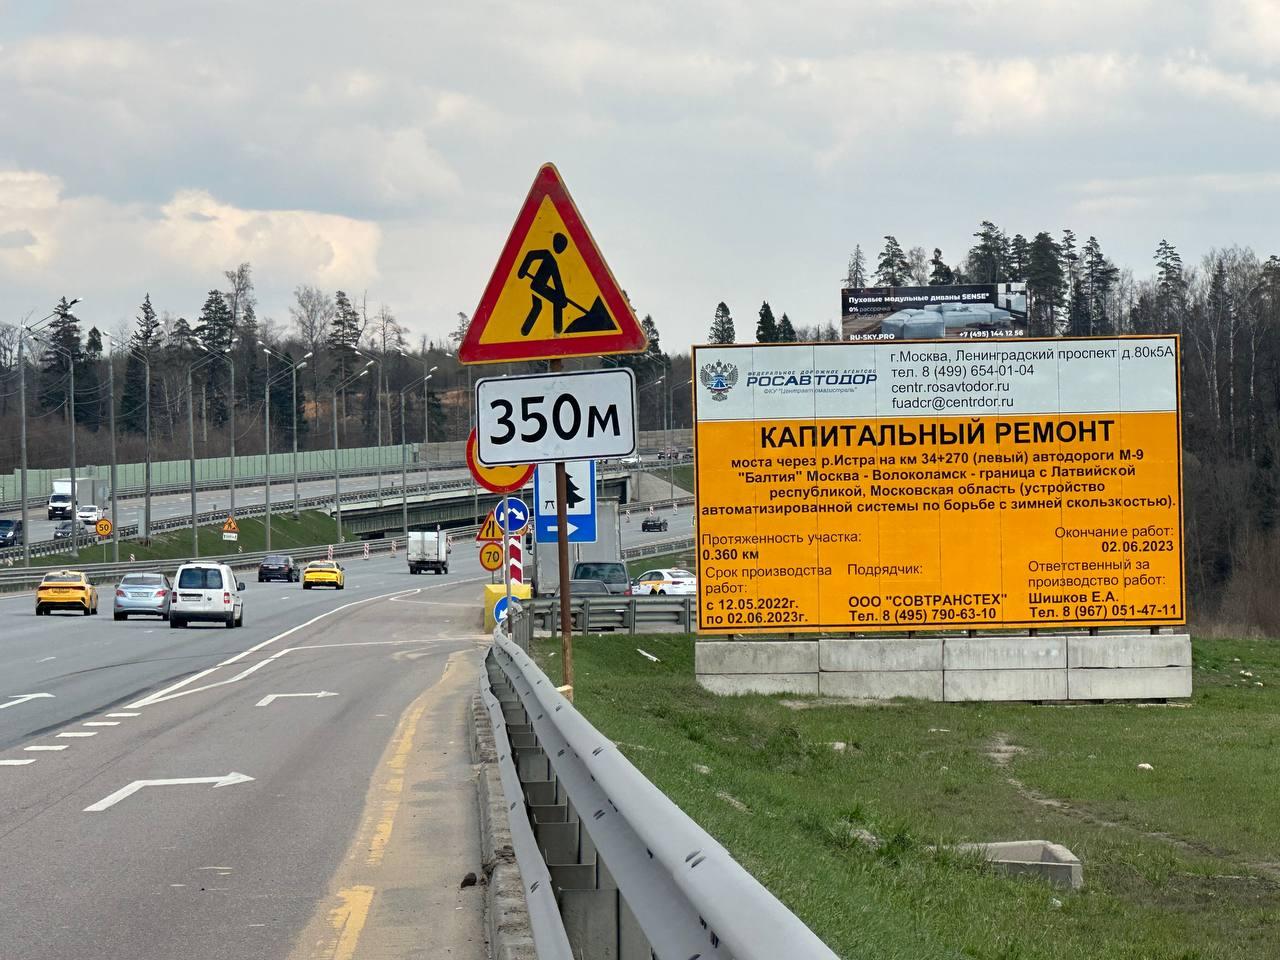 Капремонт моста на 34-ом километре автодороги М-9 «Балтия» планируют завершить в июле